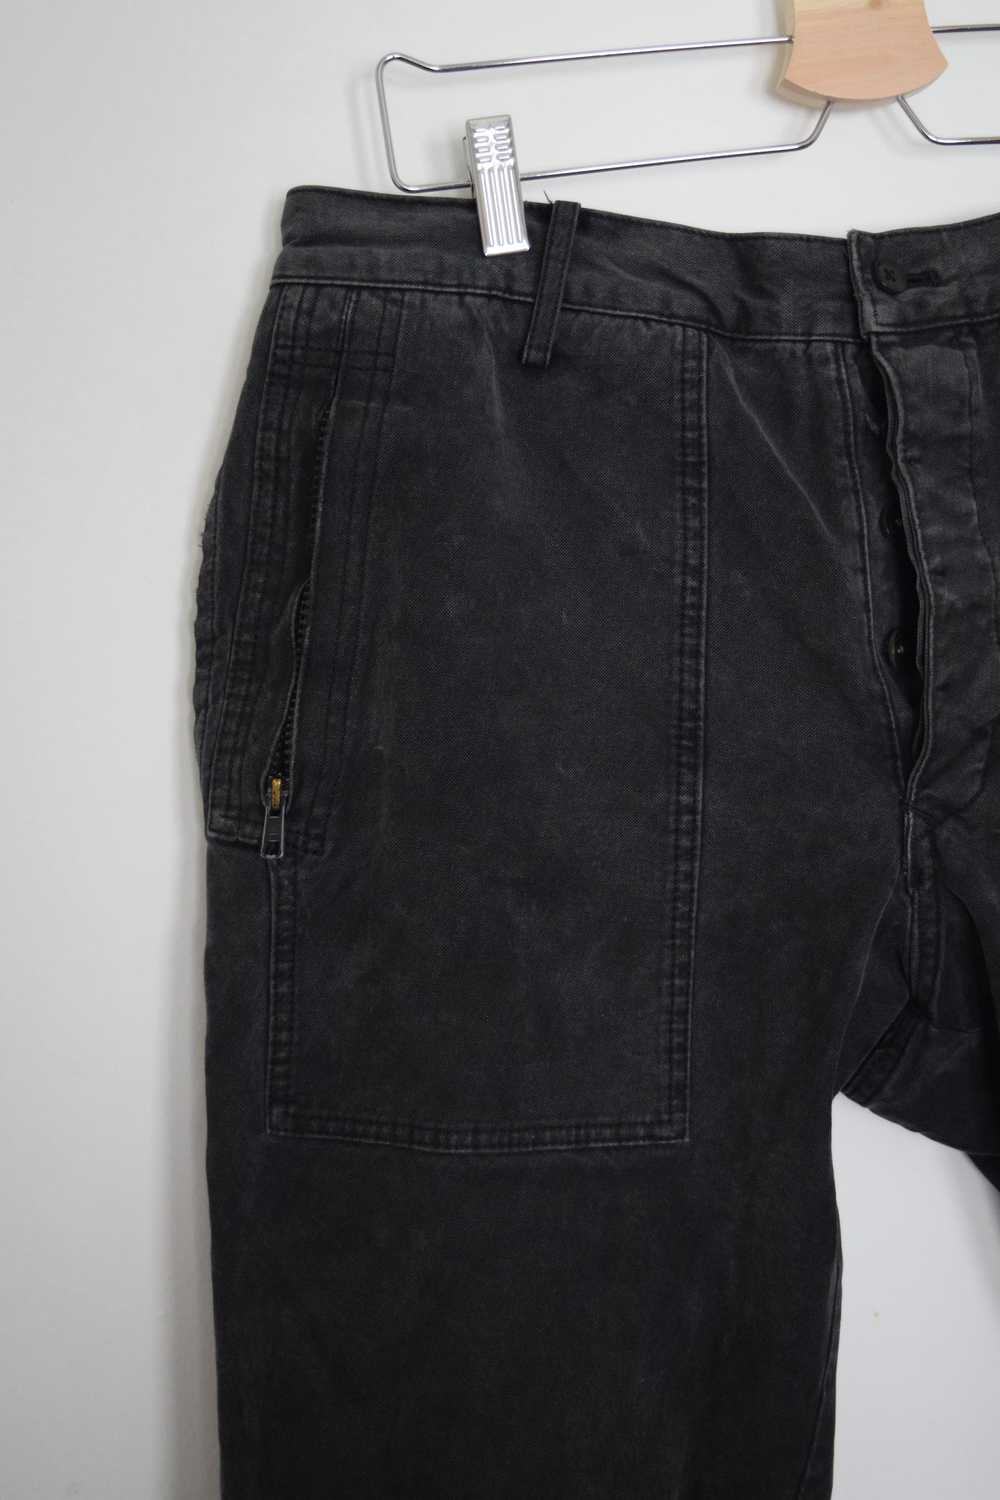 Yohji Yamamoto 2006SS Cropped Denim Pants - image 3